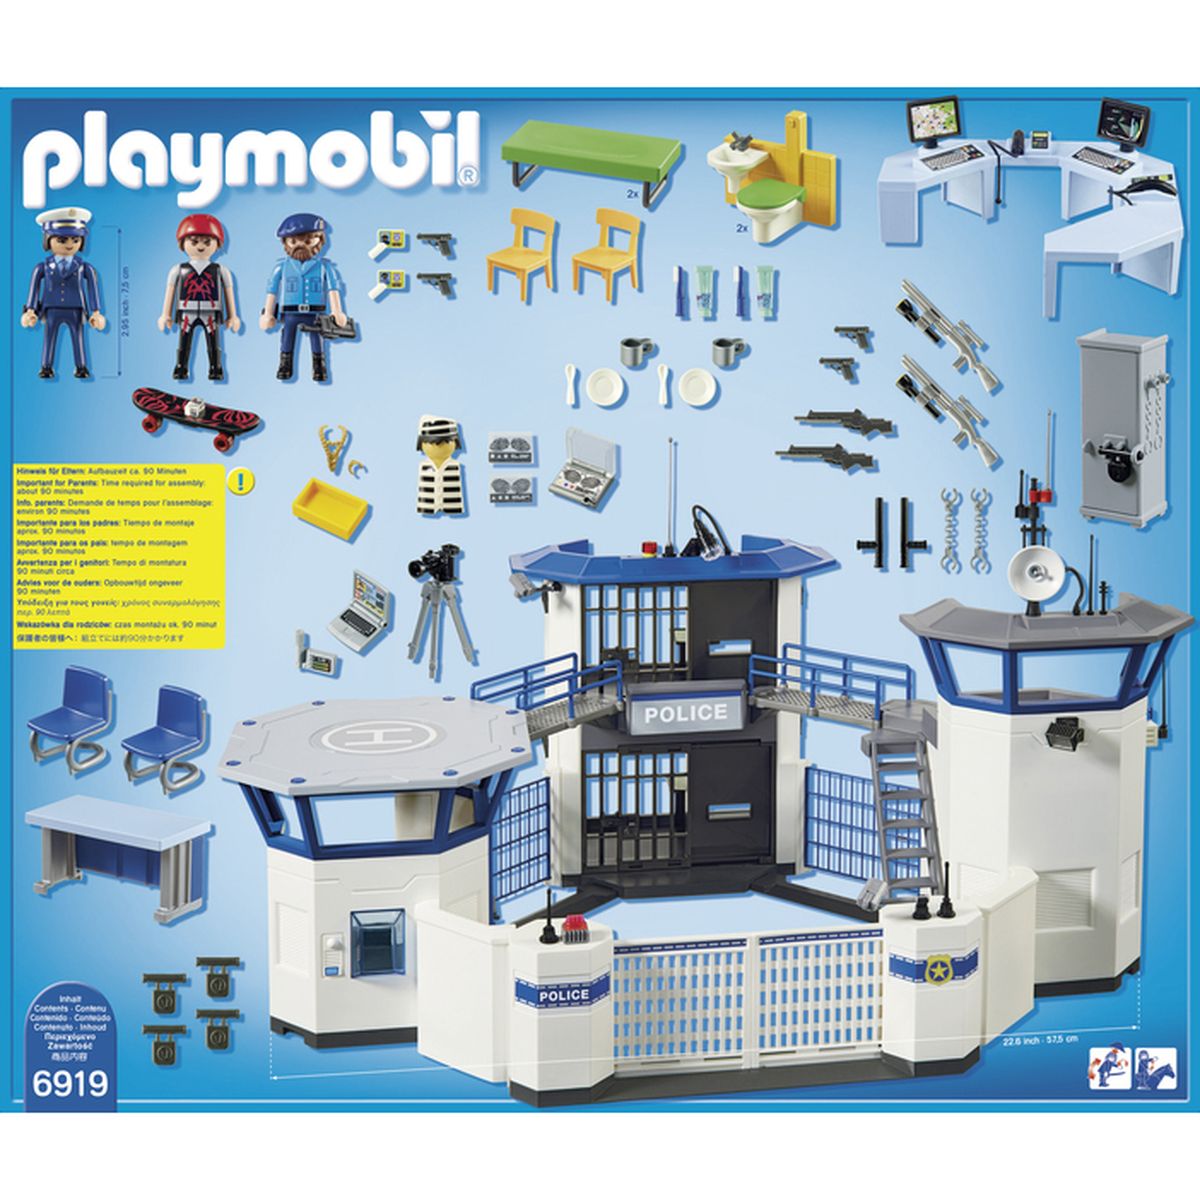 la prison playmobil